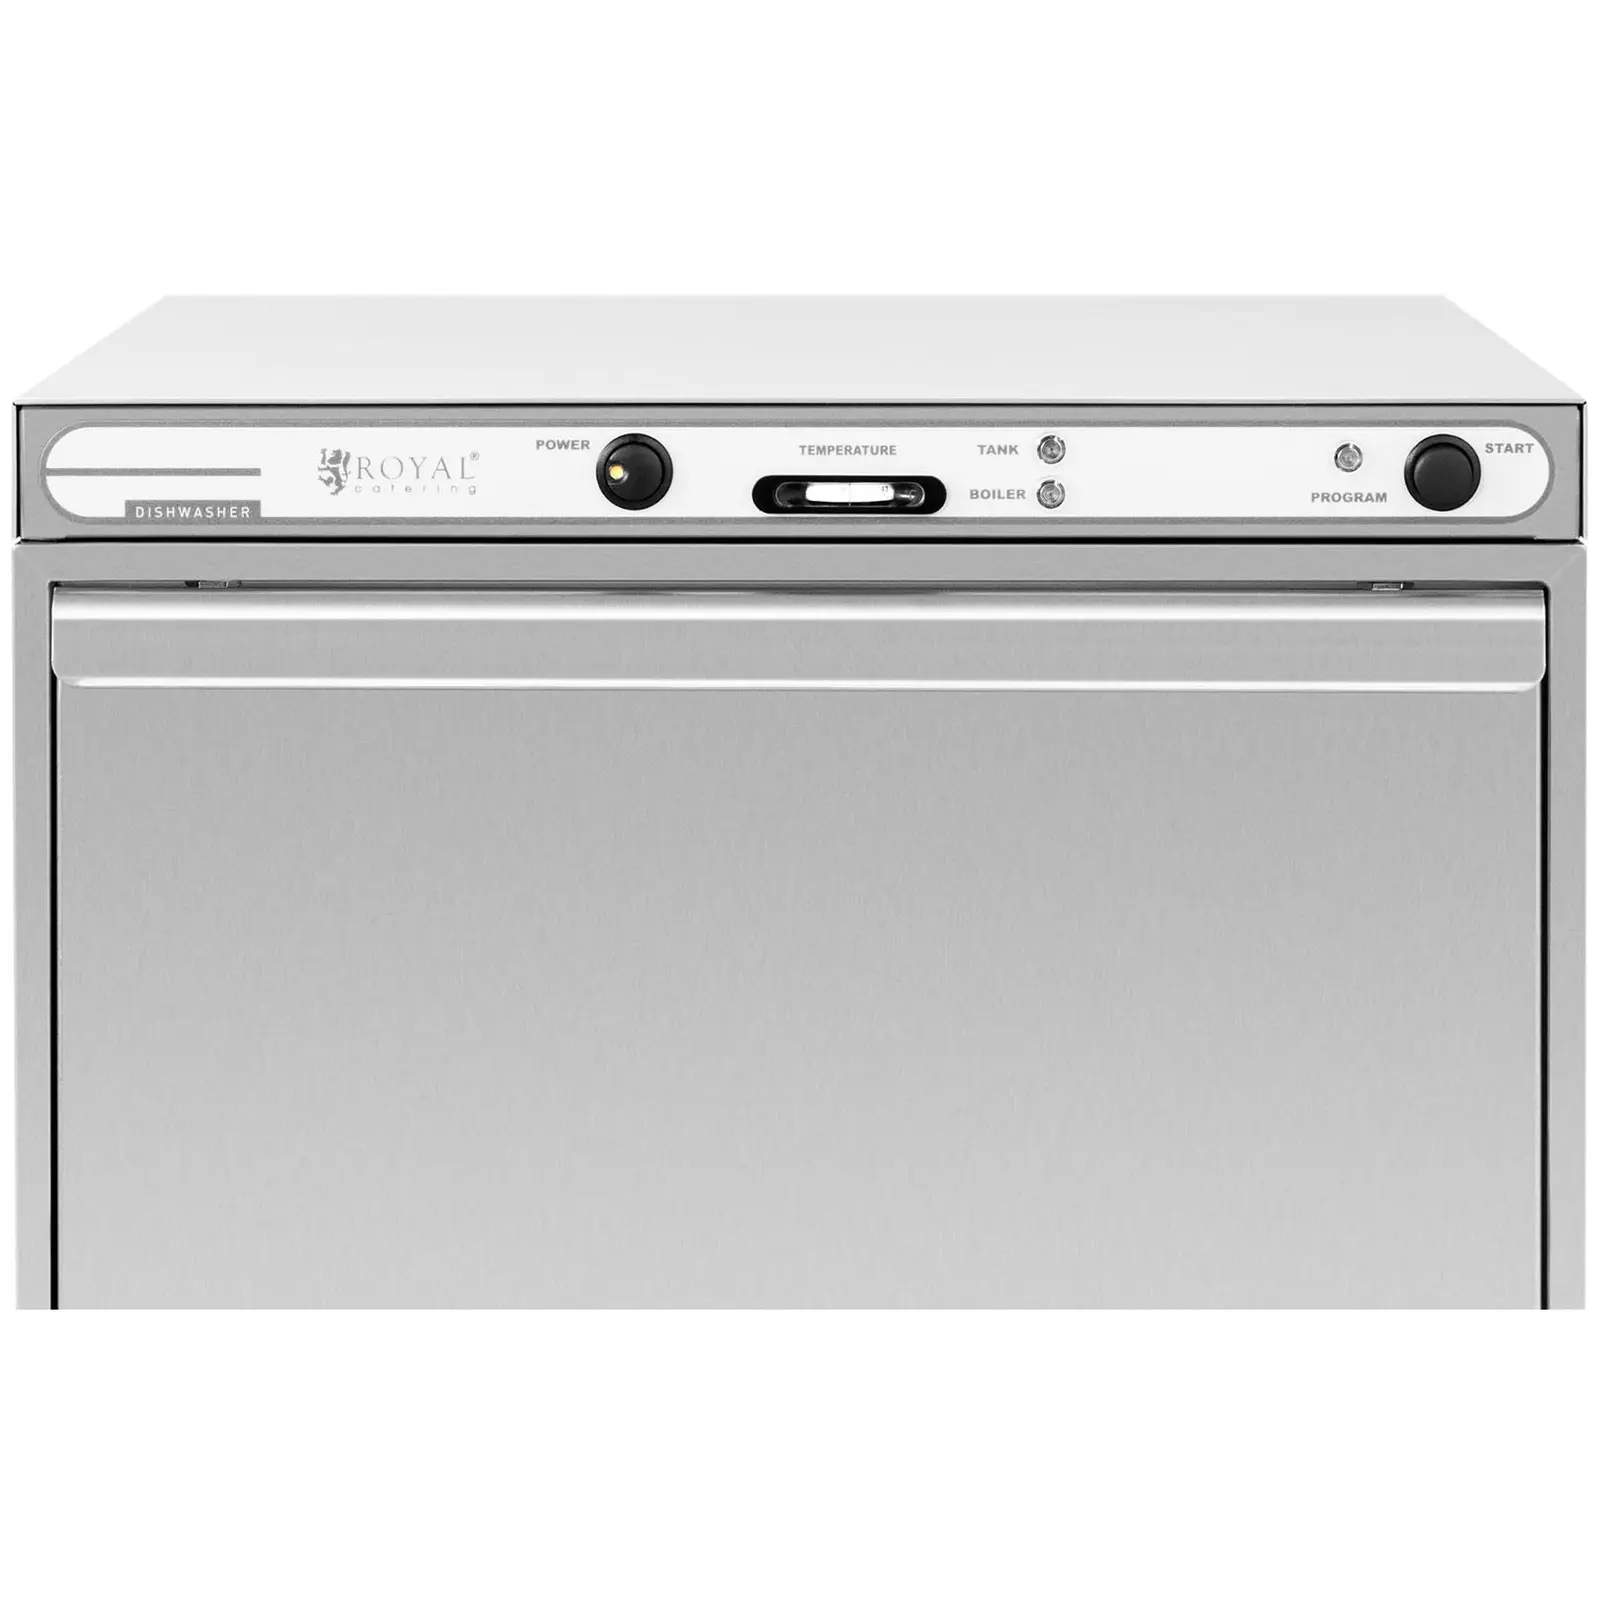 Πλυντήριο πιάτων - 6600 W - Ανοξείδωτο χάλυβα